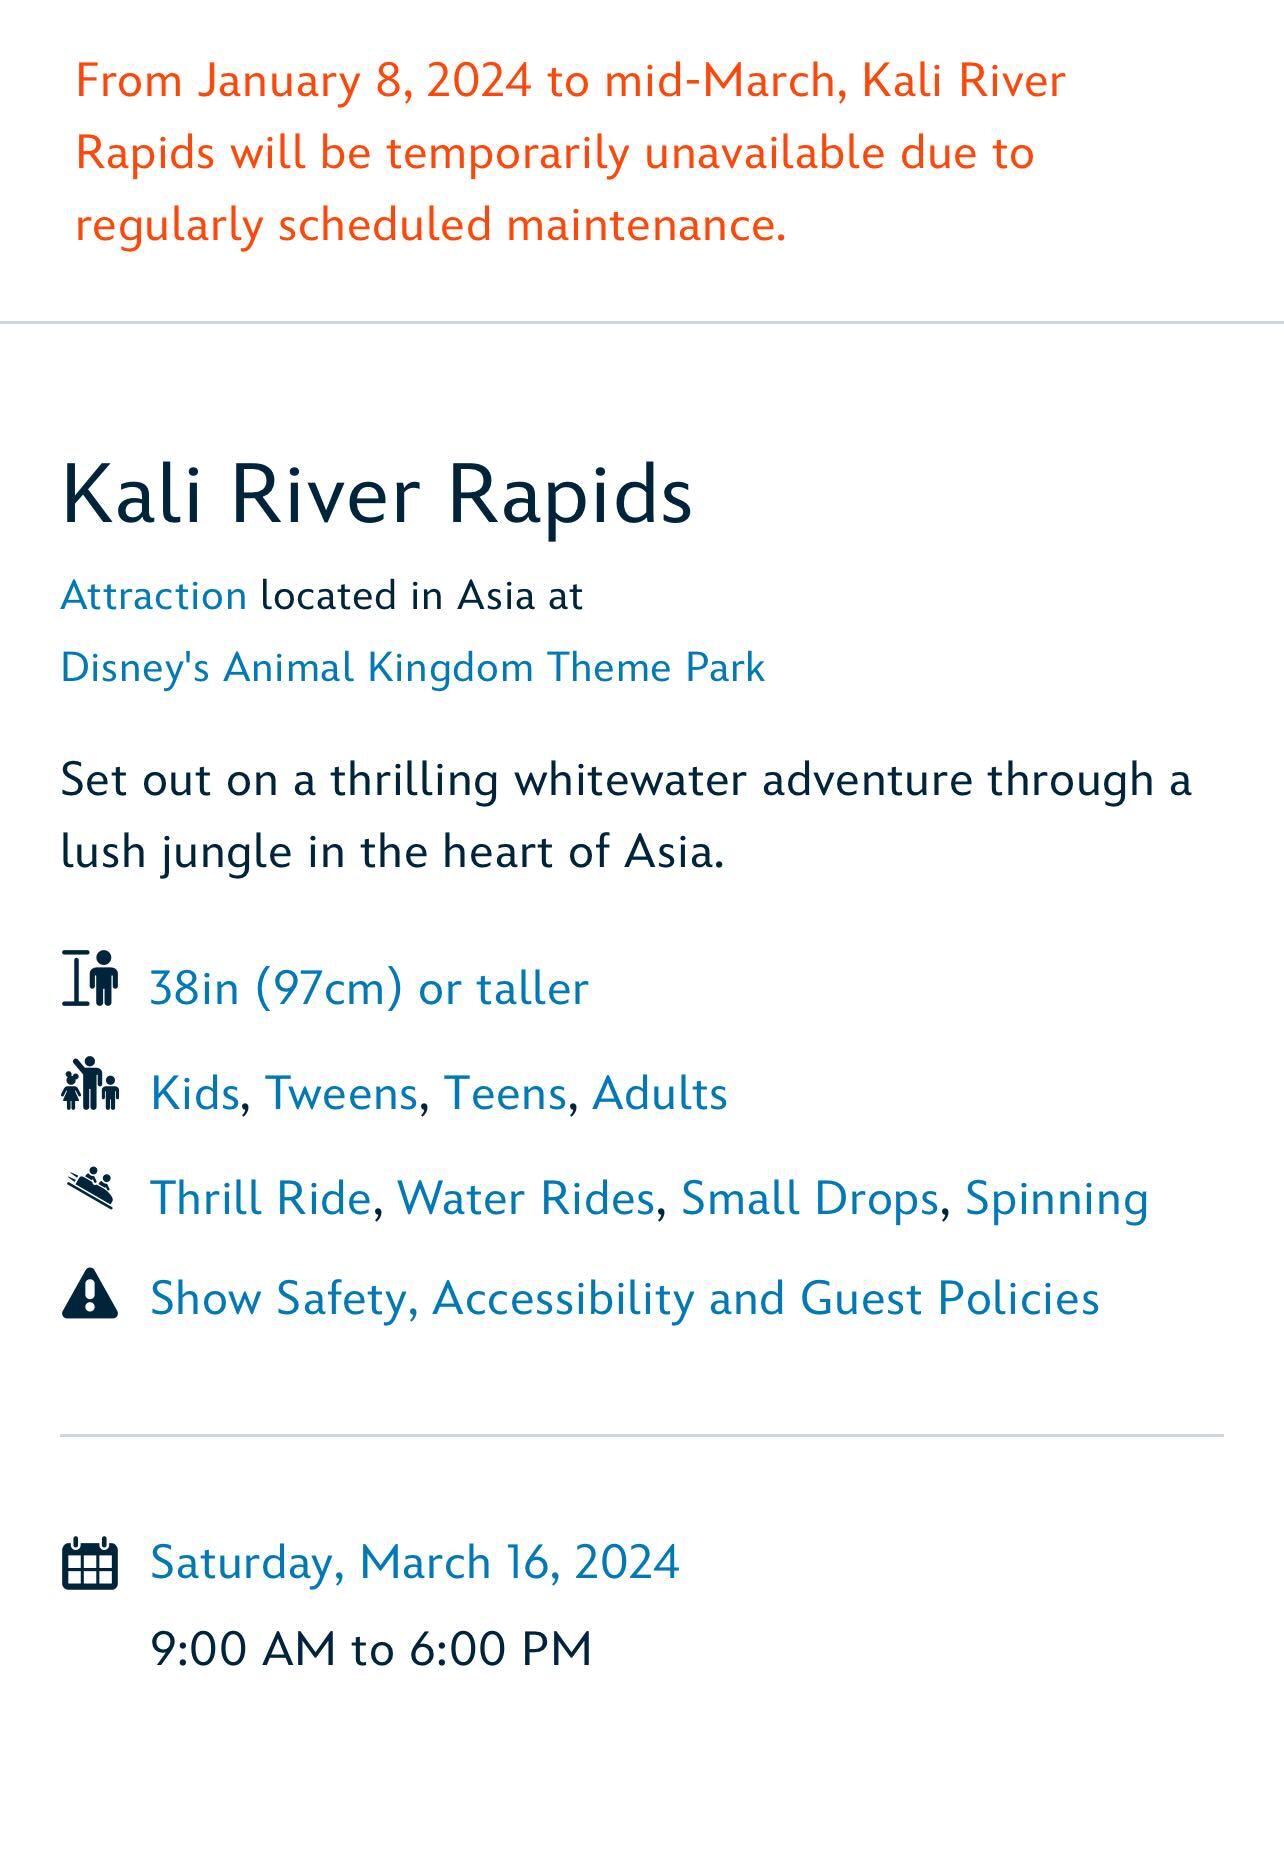 Kali River Rapids Update